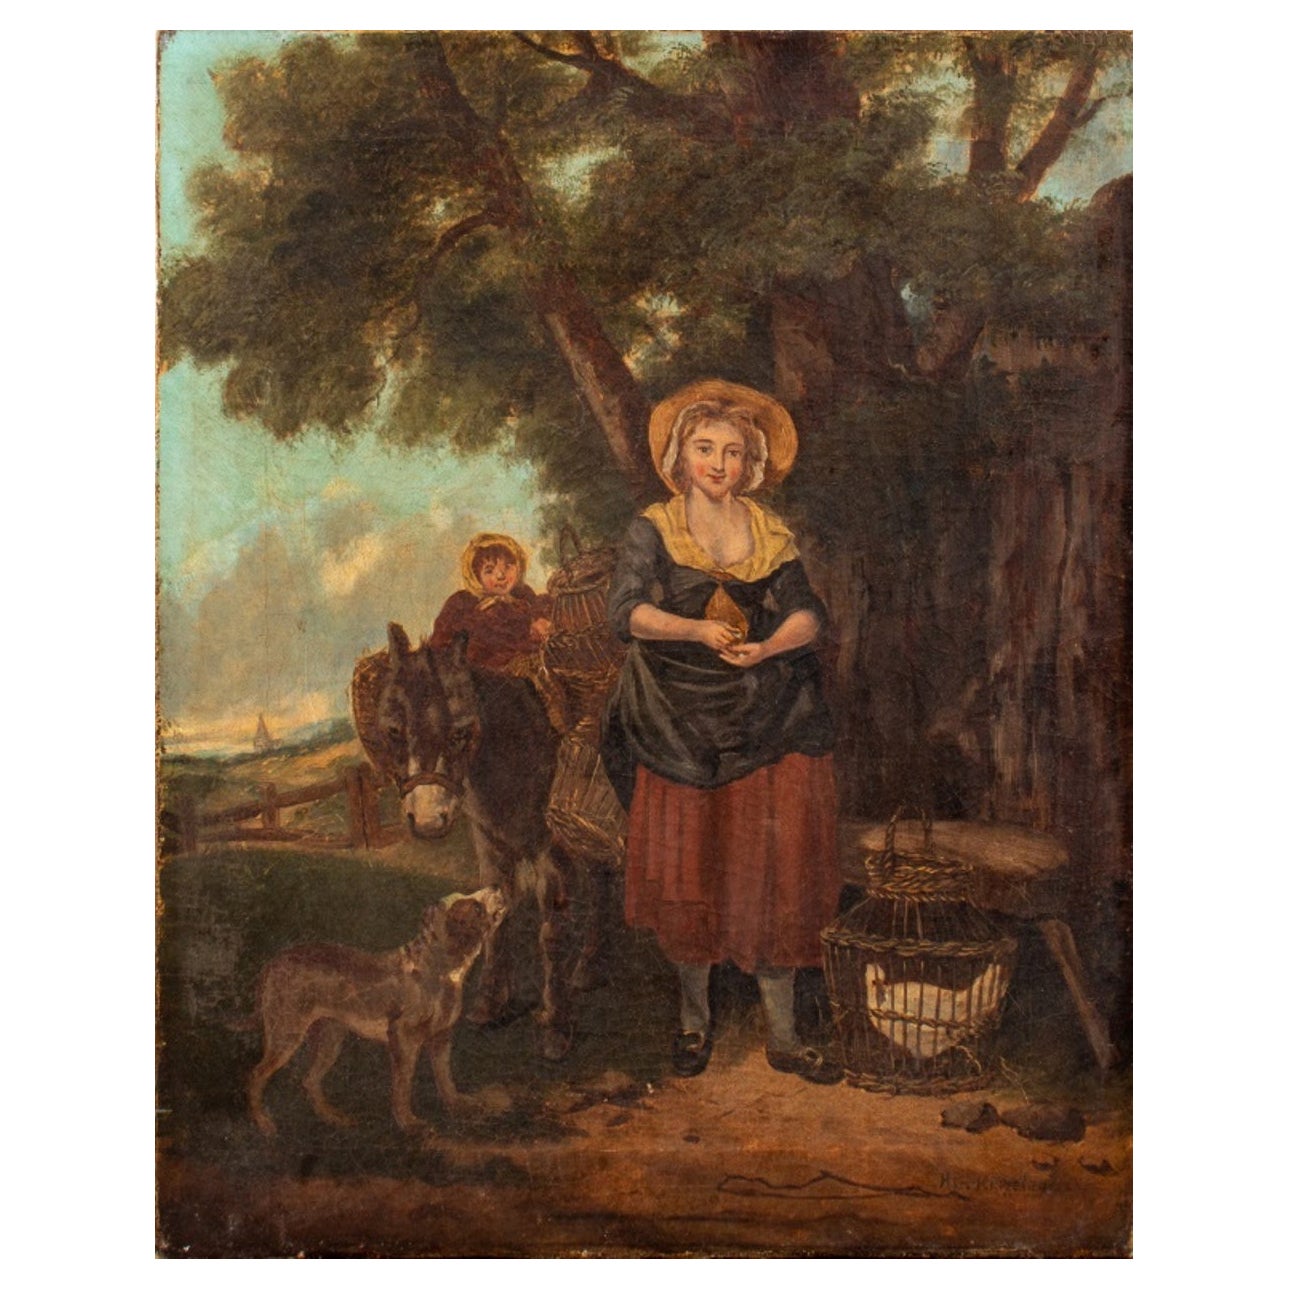 H.G. Huile pastorale sur toile de Kingsley, 18e siècle